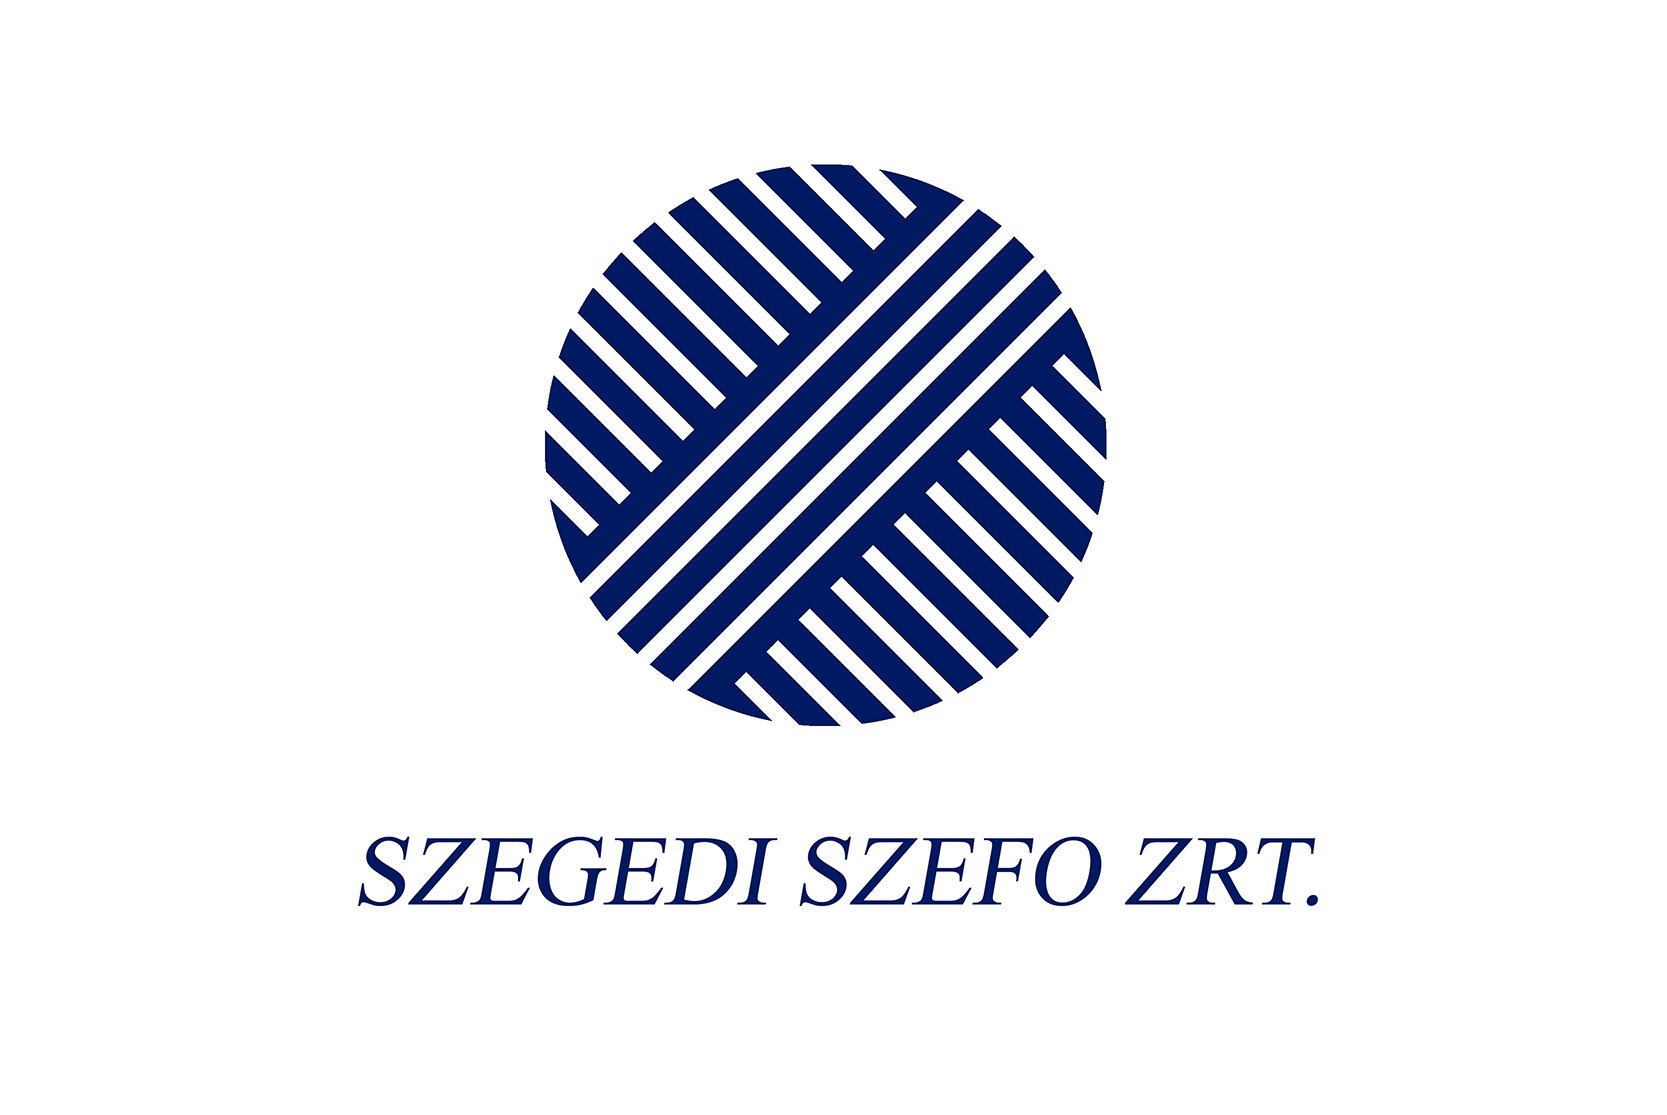 Nagyobb kapacitás és több külföldi partner elérése a cél - A Szegedi SZEFO-nál jártunk